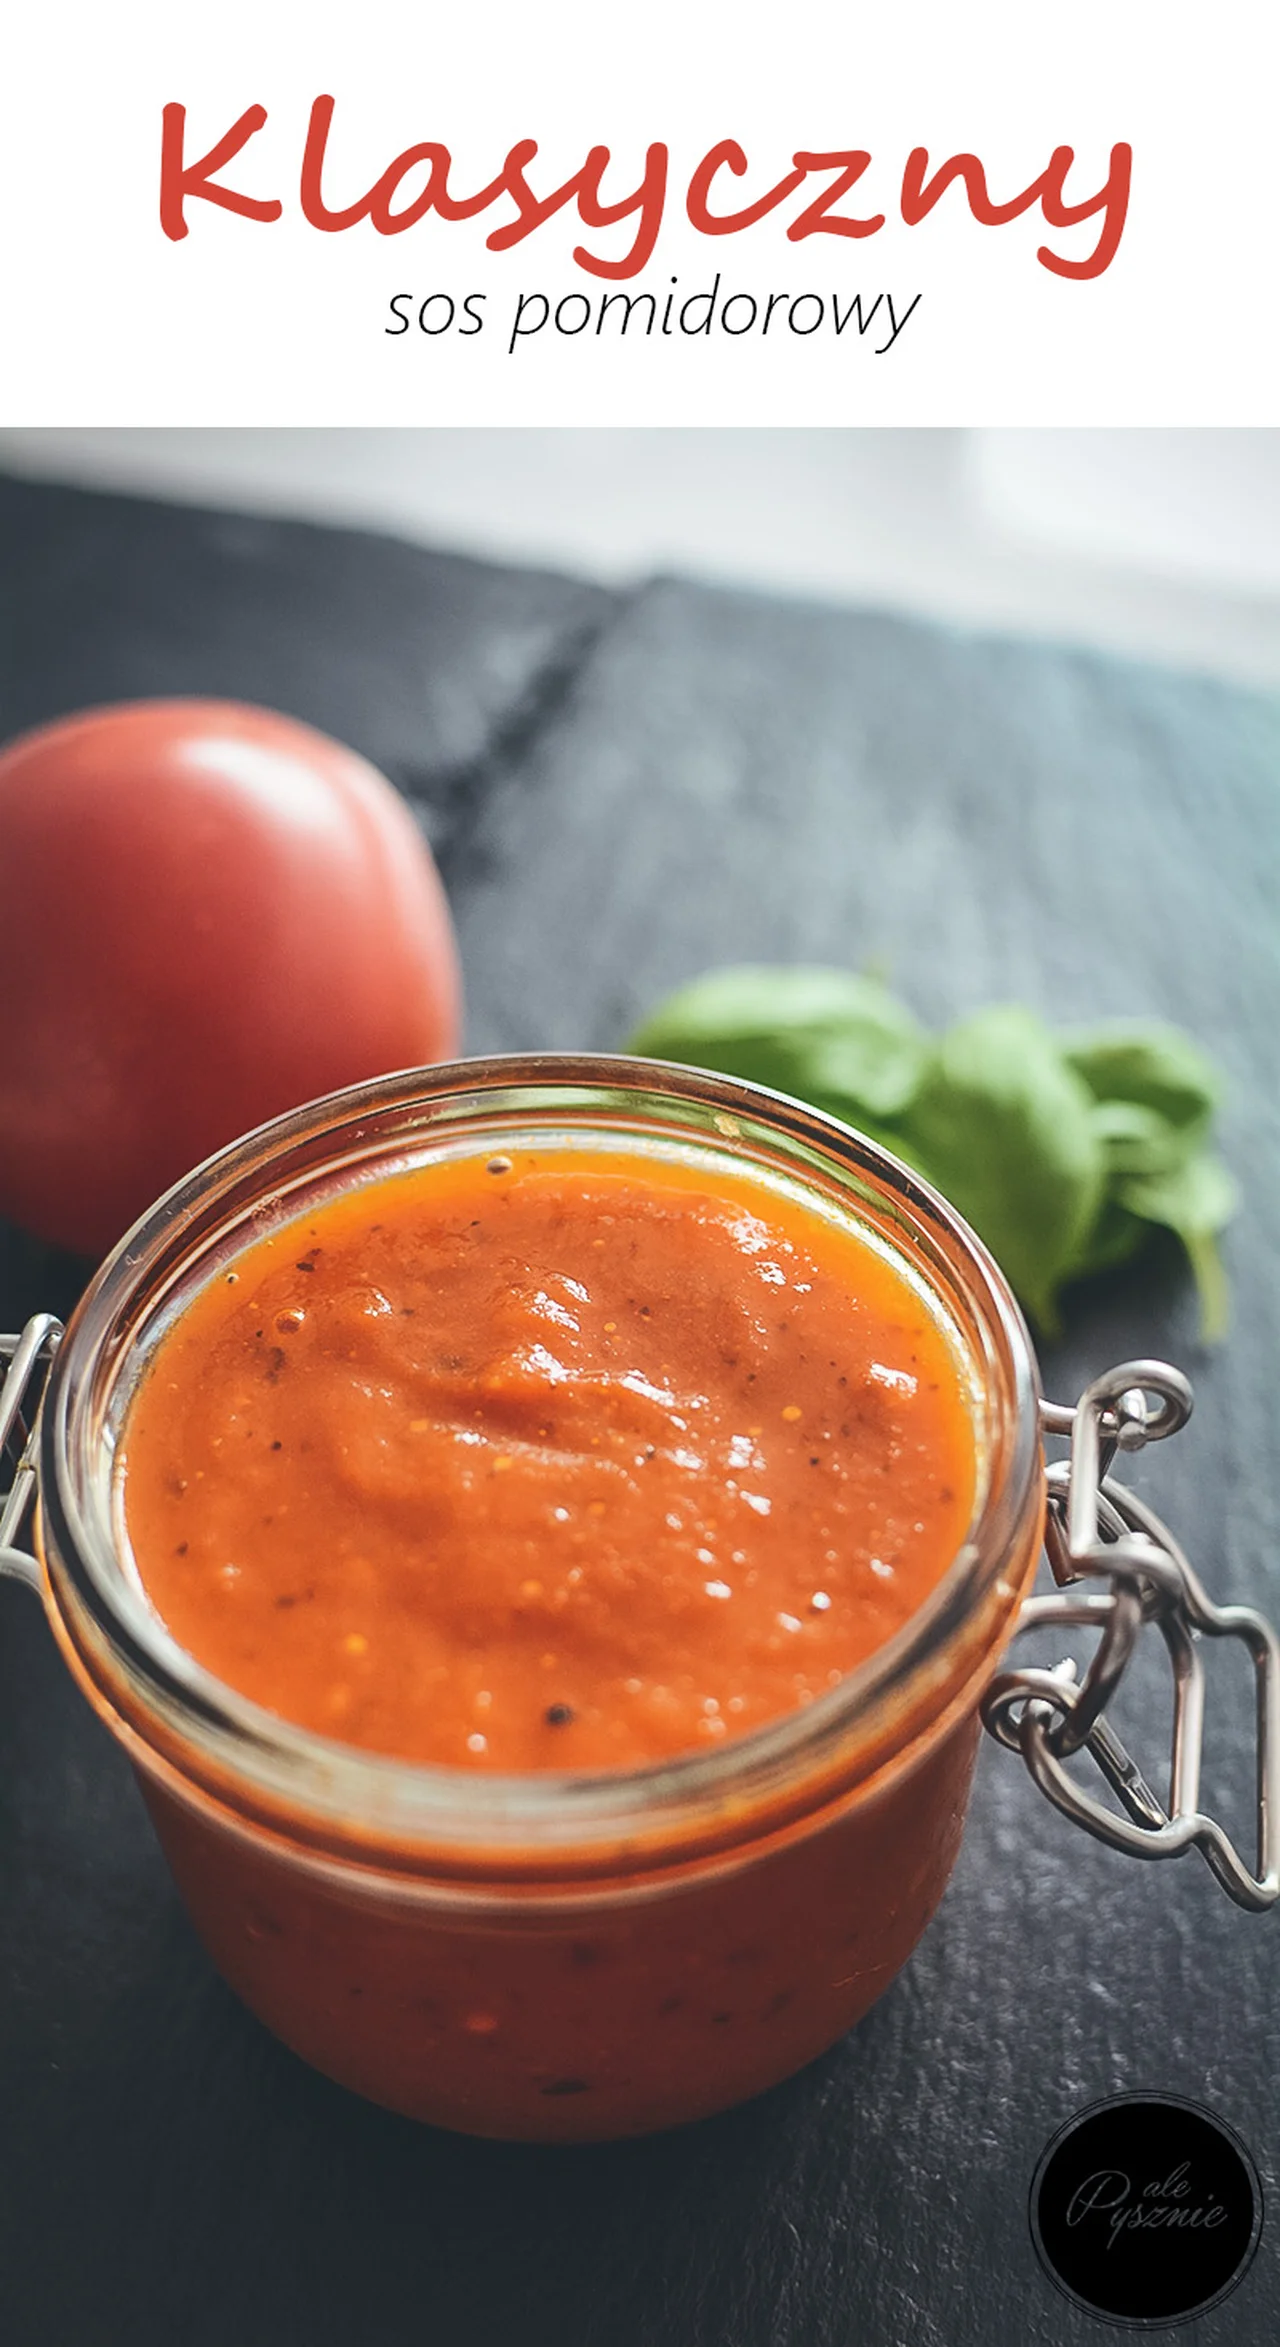 Klasyczny sos pomidorowy